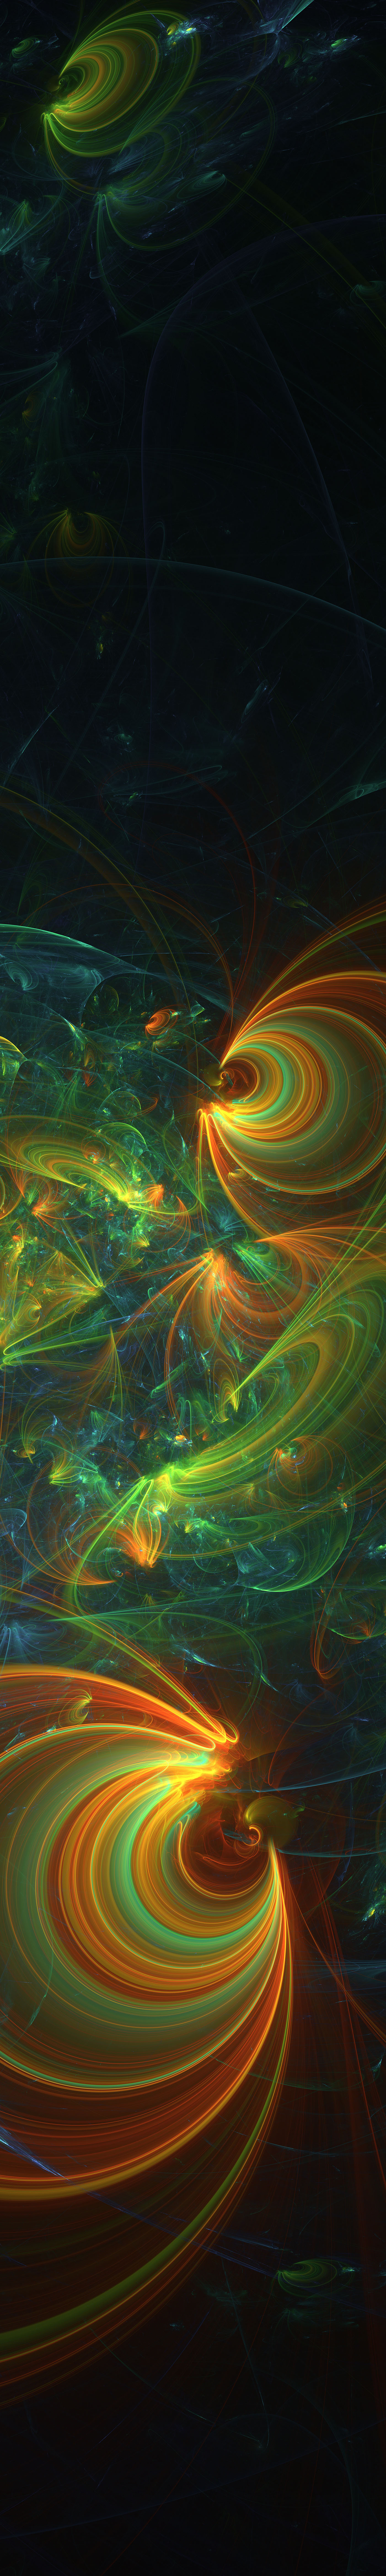 chaos fractal deepfield maths infinite flame mathematics annihilation